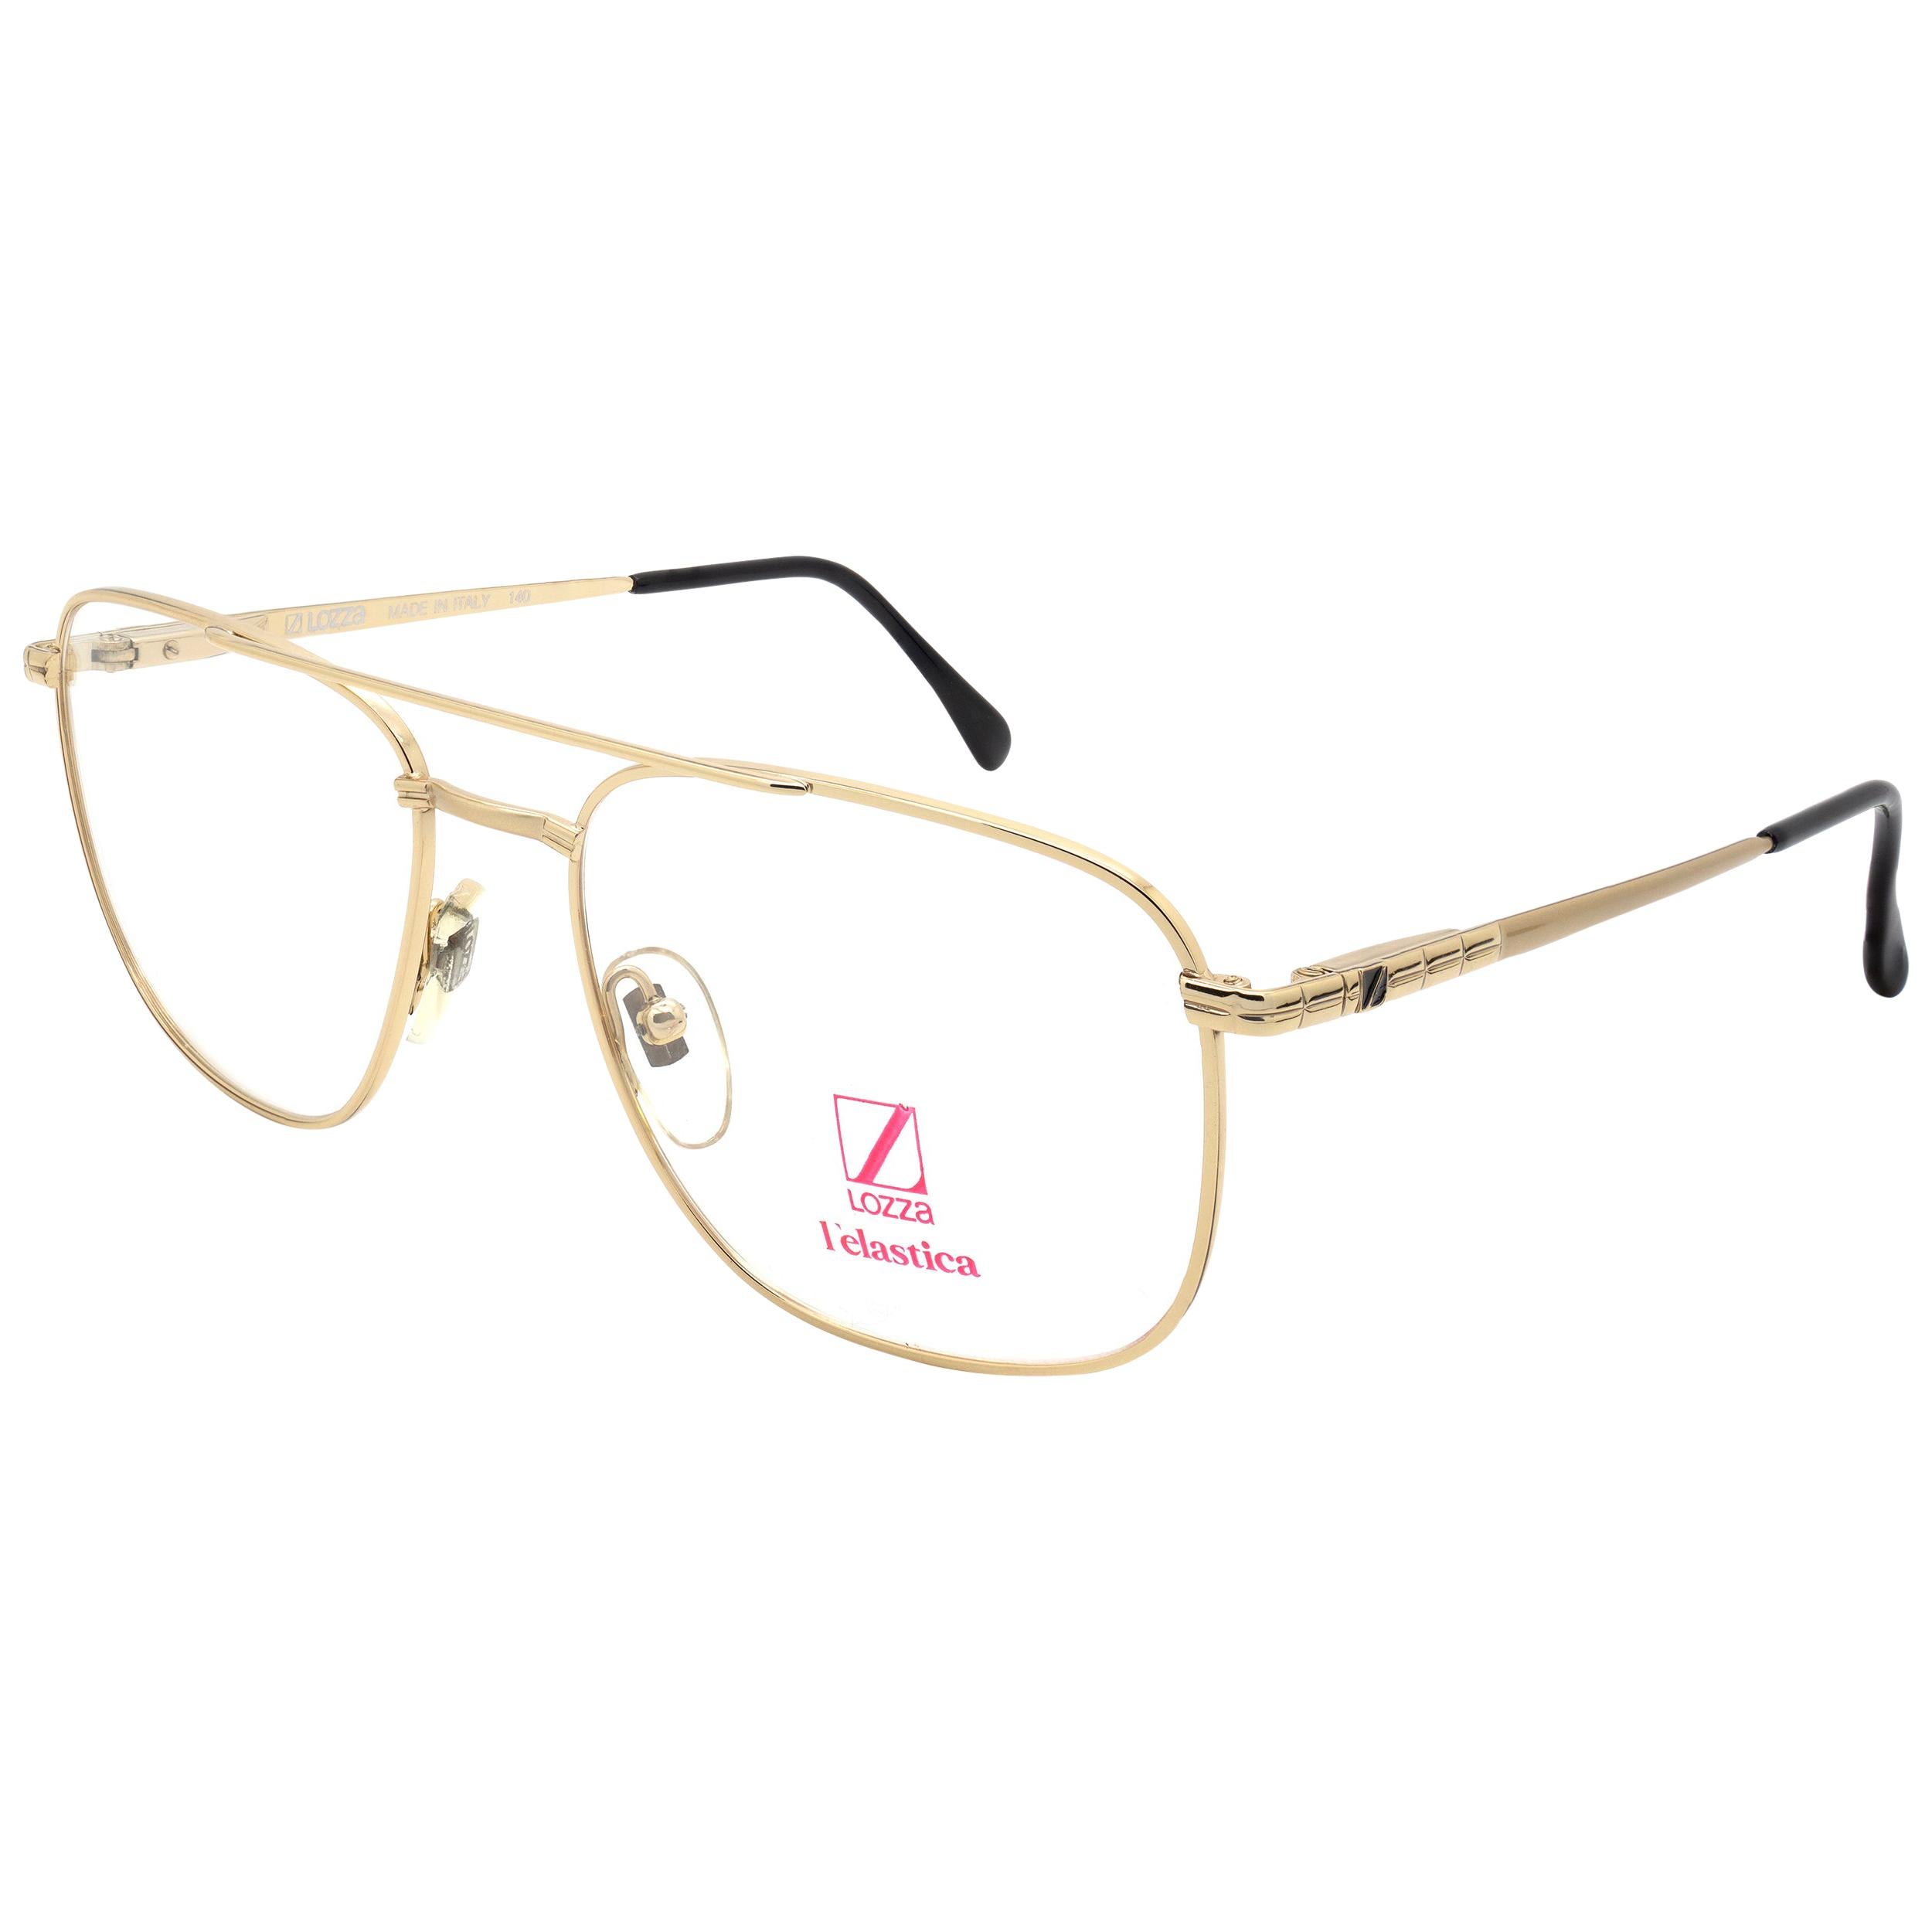 Lozza aviator vintage glasses frame For Sale